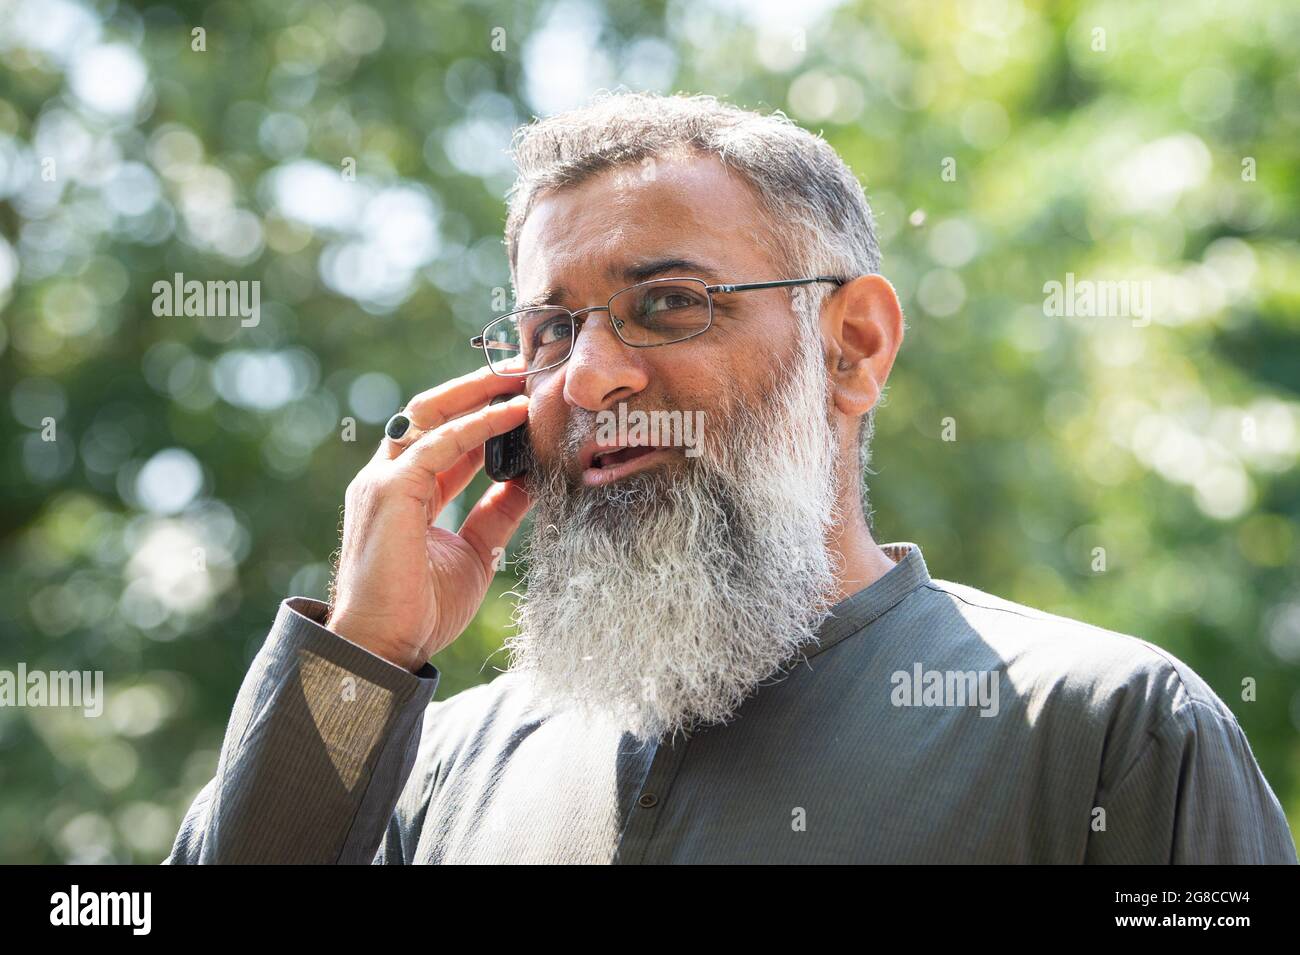 Der radikale Prediger Anjem Choudary spricht in Ilford, Ost-London, mit den Medien, nachdem die Einschränkungen für ihn, nach der Entlassung aus dem Gefängnis in der Öffentlichkeit zu sprechen, zu Ende waren. Bilddatum: Montag, 19. Juli 2021. Stockfoto